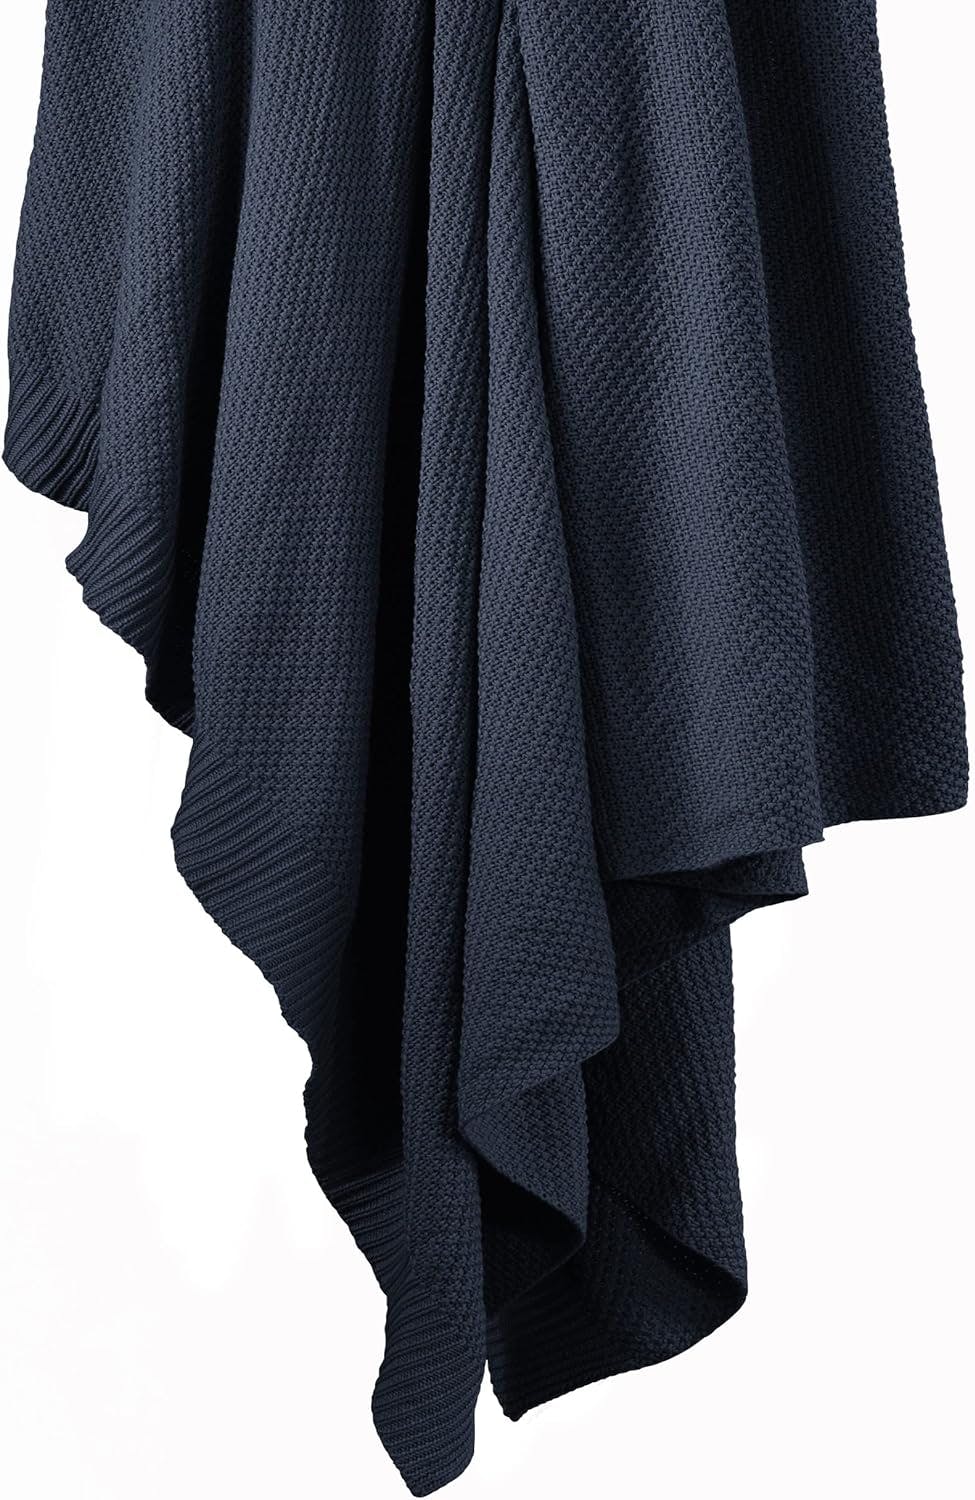 Luxurious Navy Cotton Knit Throw Blanket, 50x60 inch, Cozy Farmhouse Style